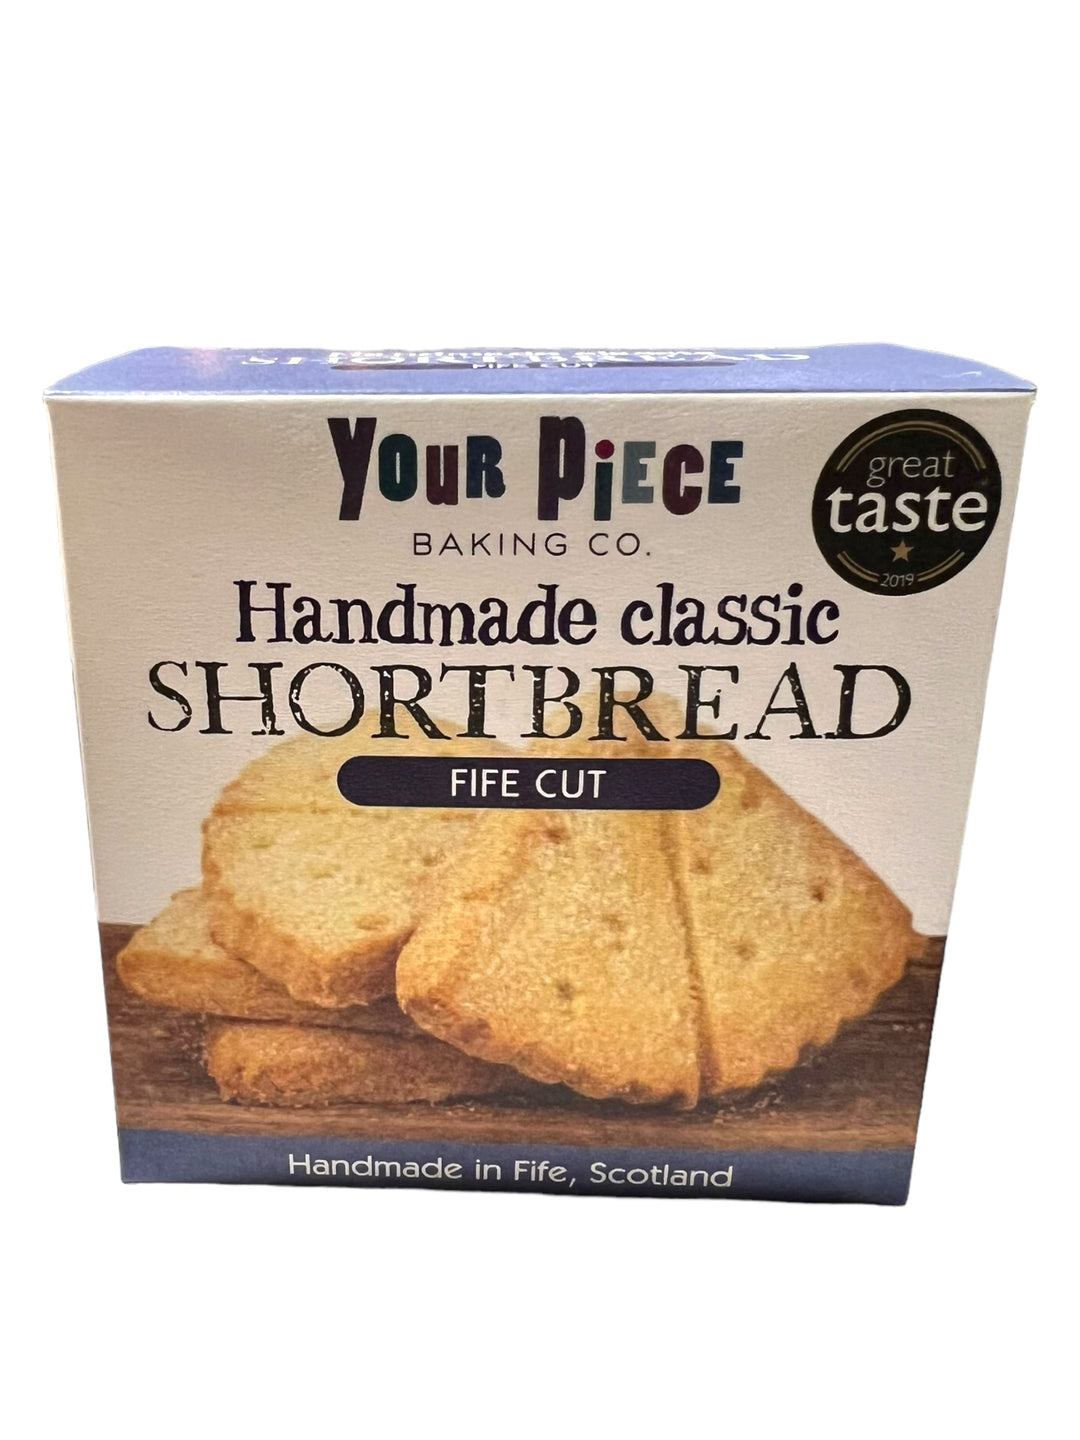 Your Piece Handmade Shortbread